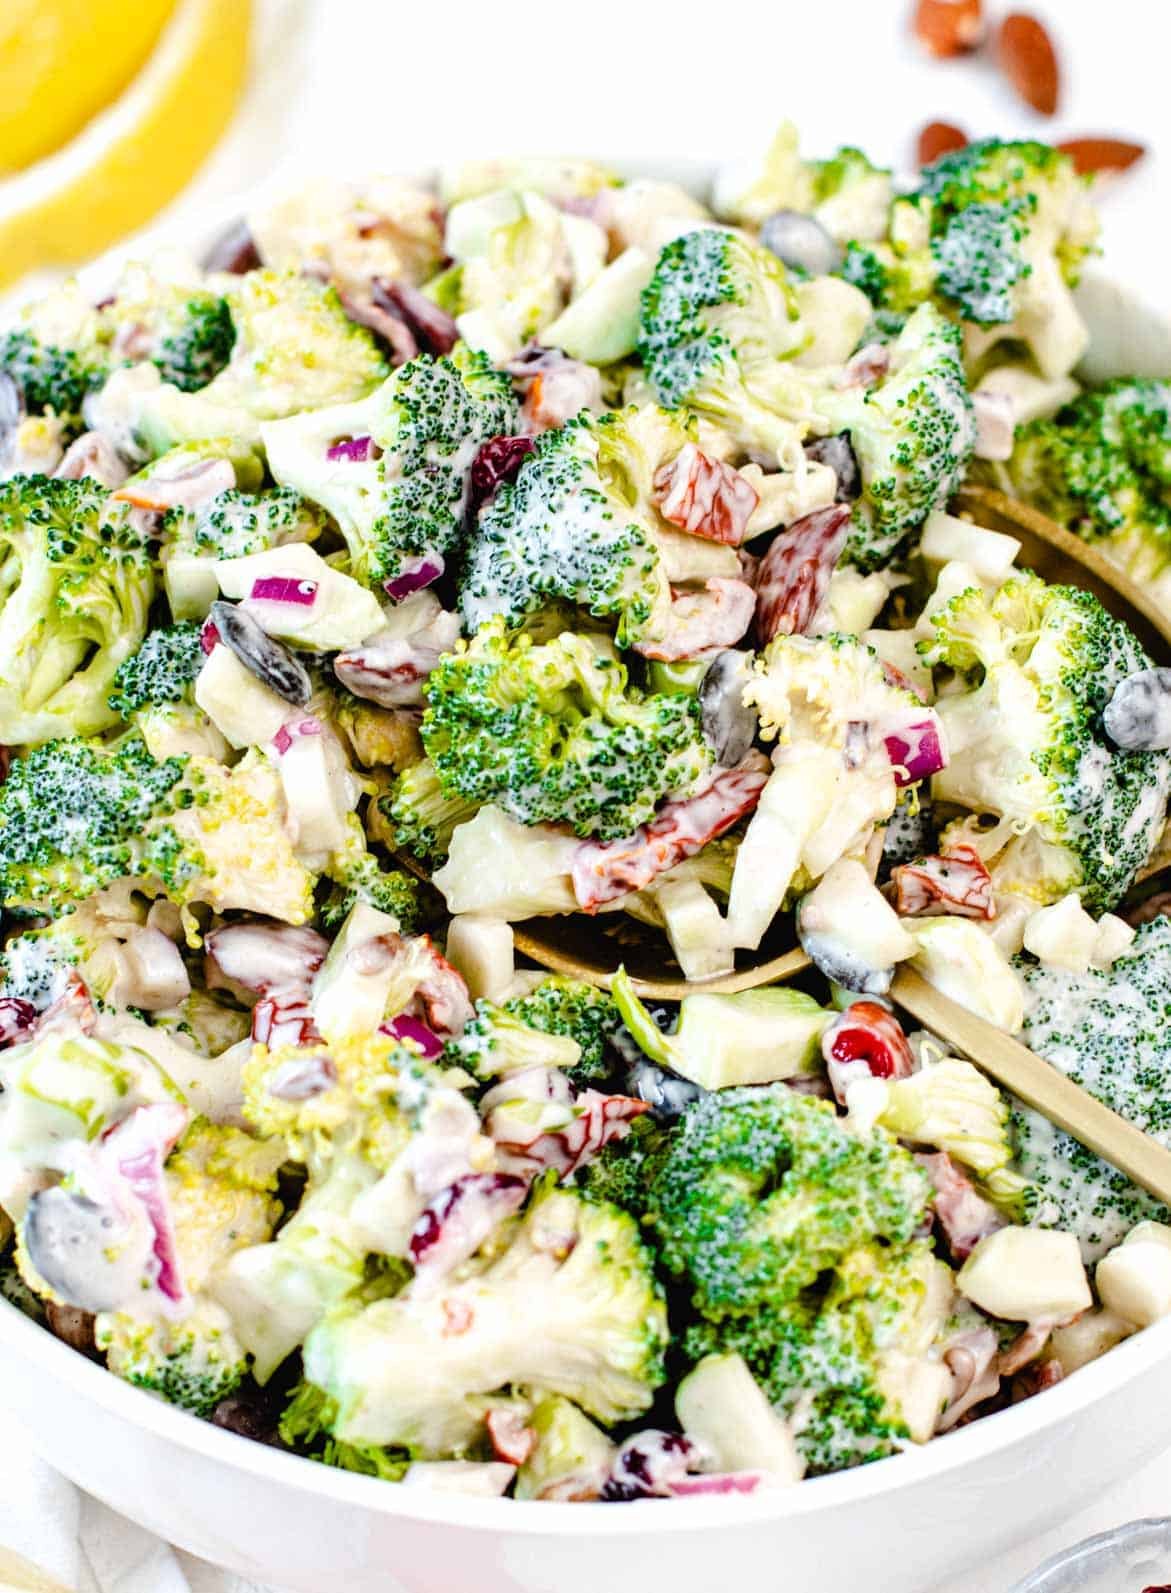 Broccoli salad with almonds and lemon